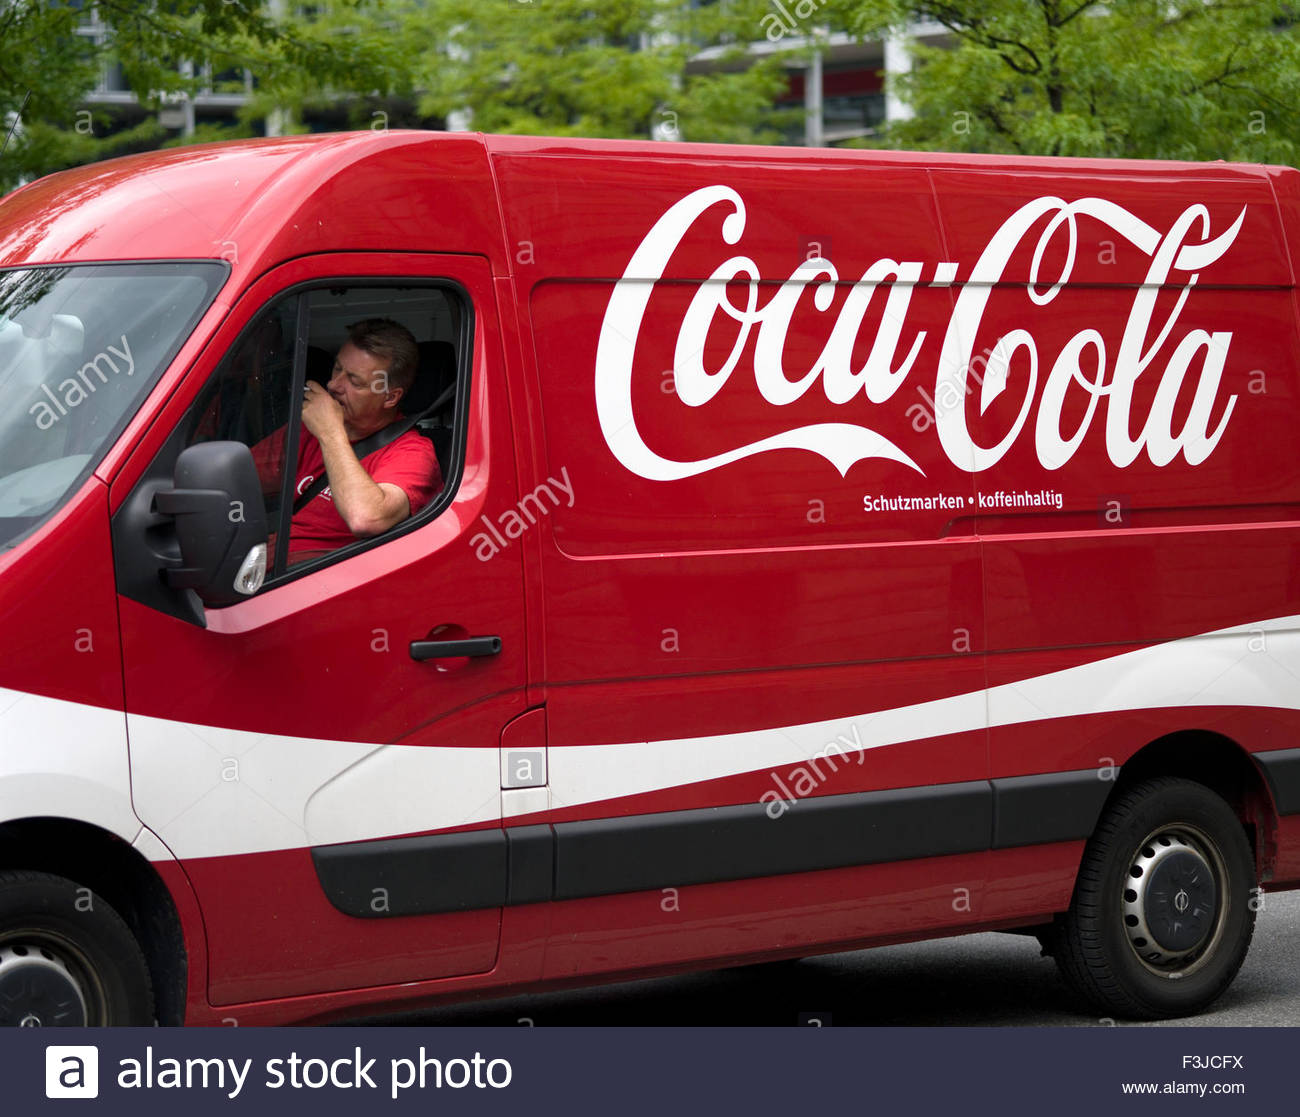 vans coca cola